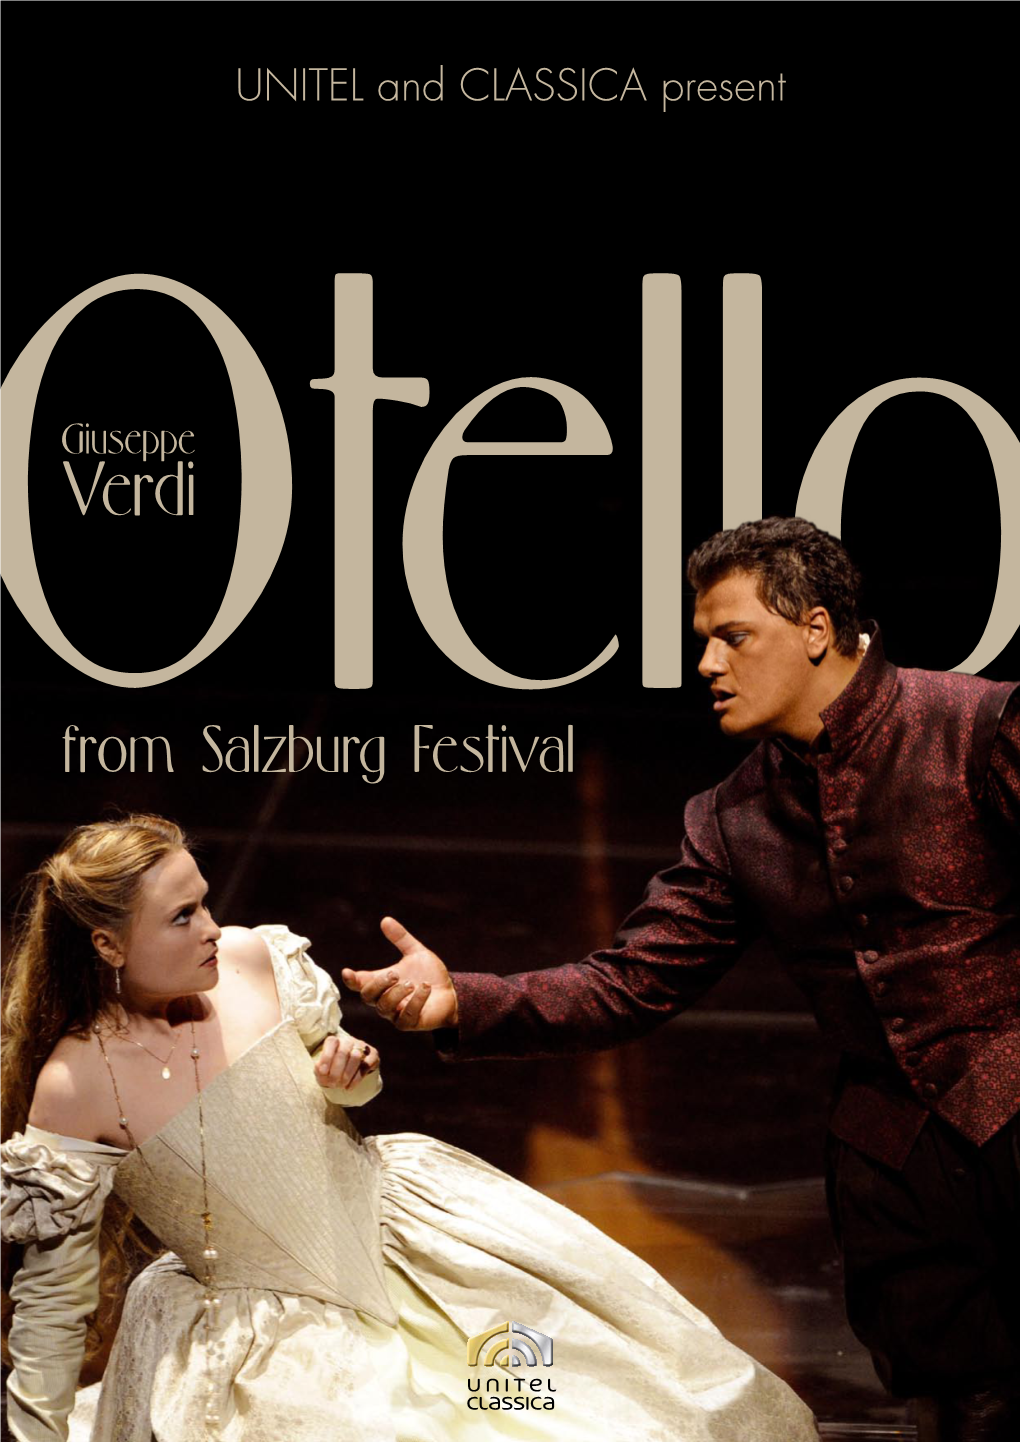 From Salzburg Festival Otello from Salzburg Festival